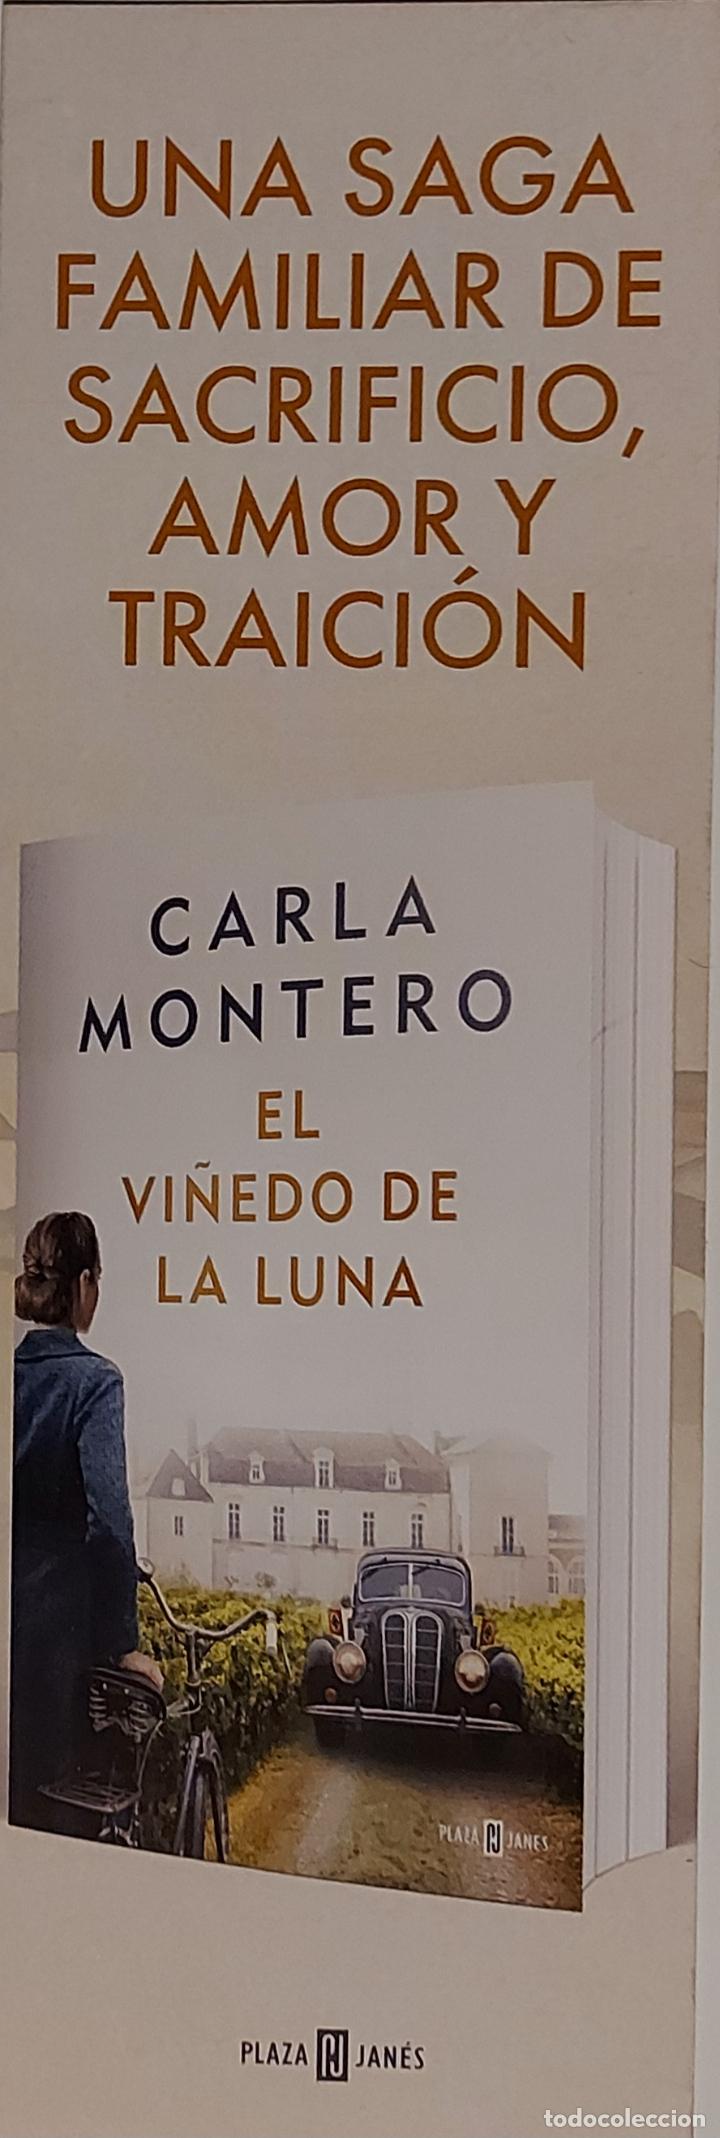 Libro: El Viñedo De La Luna. Montero, Carla. Plaza & Janes